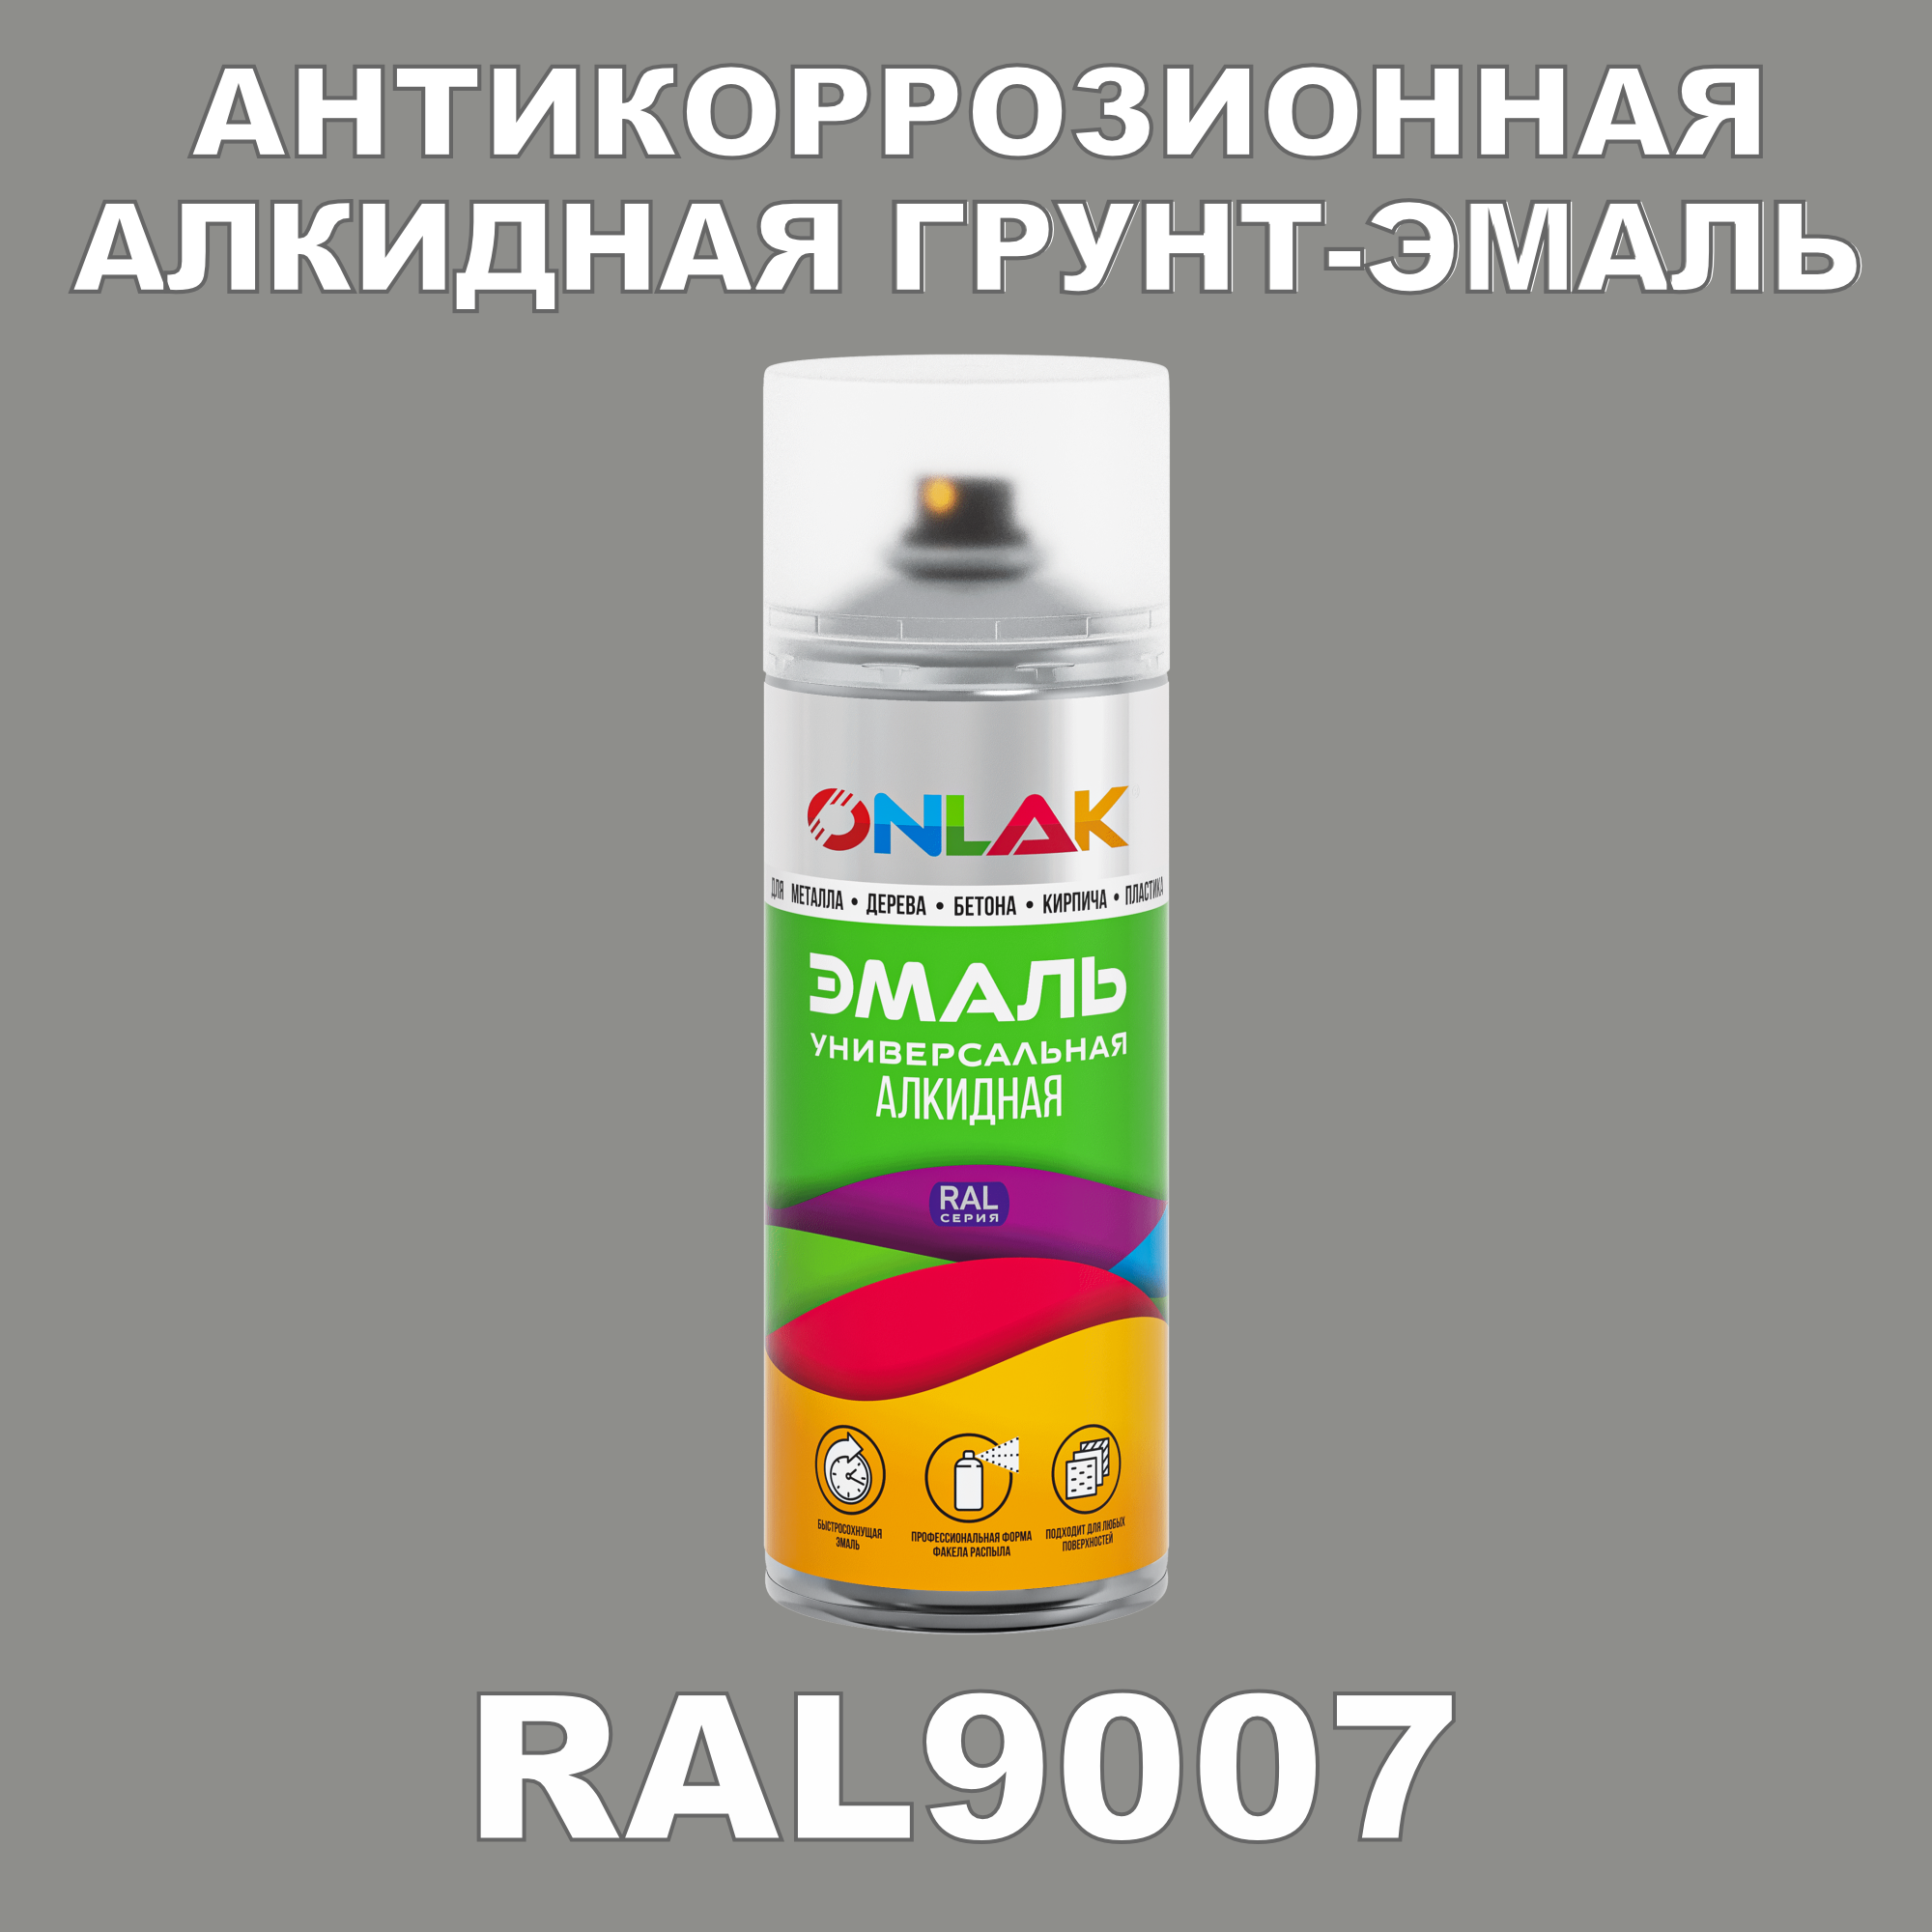 Антикоррозионная грунт-эмаль ONLAK RAL 9007,белый,622 мл грунт эмаль slaven 3в1 быстросохнущий антикоррозионный белый 3 2 кг 92371